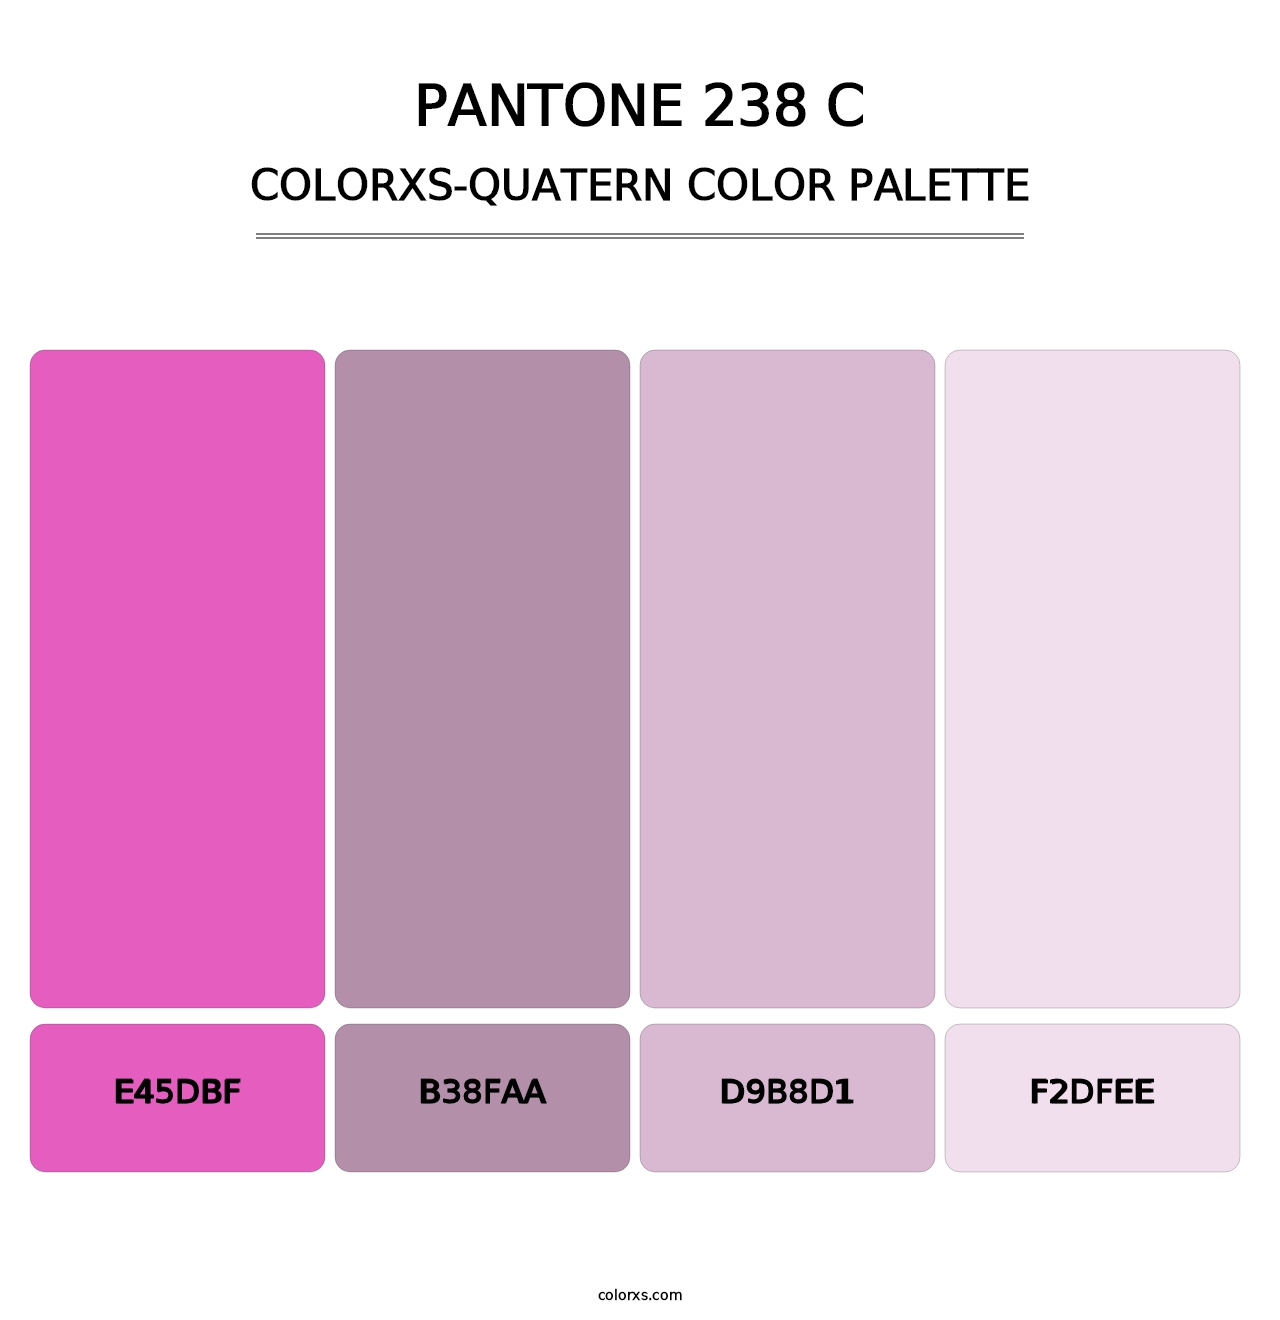 PANTONE 238 C - Colorxs Quatern Palette